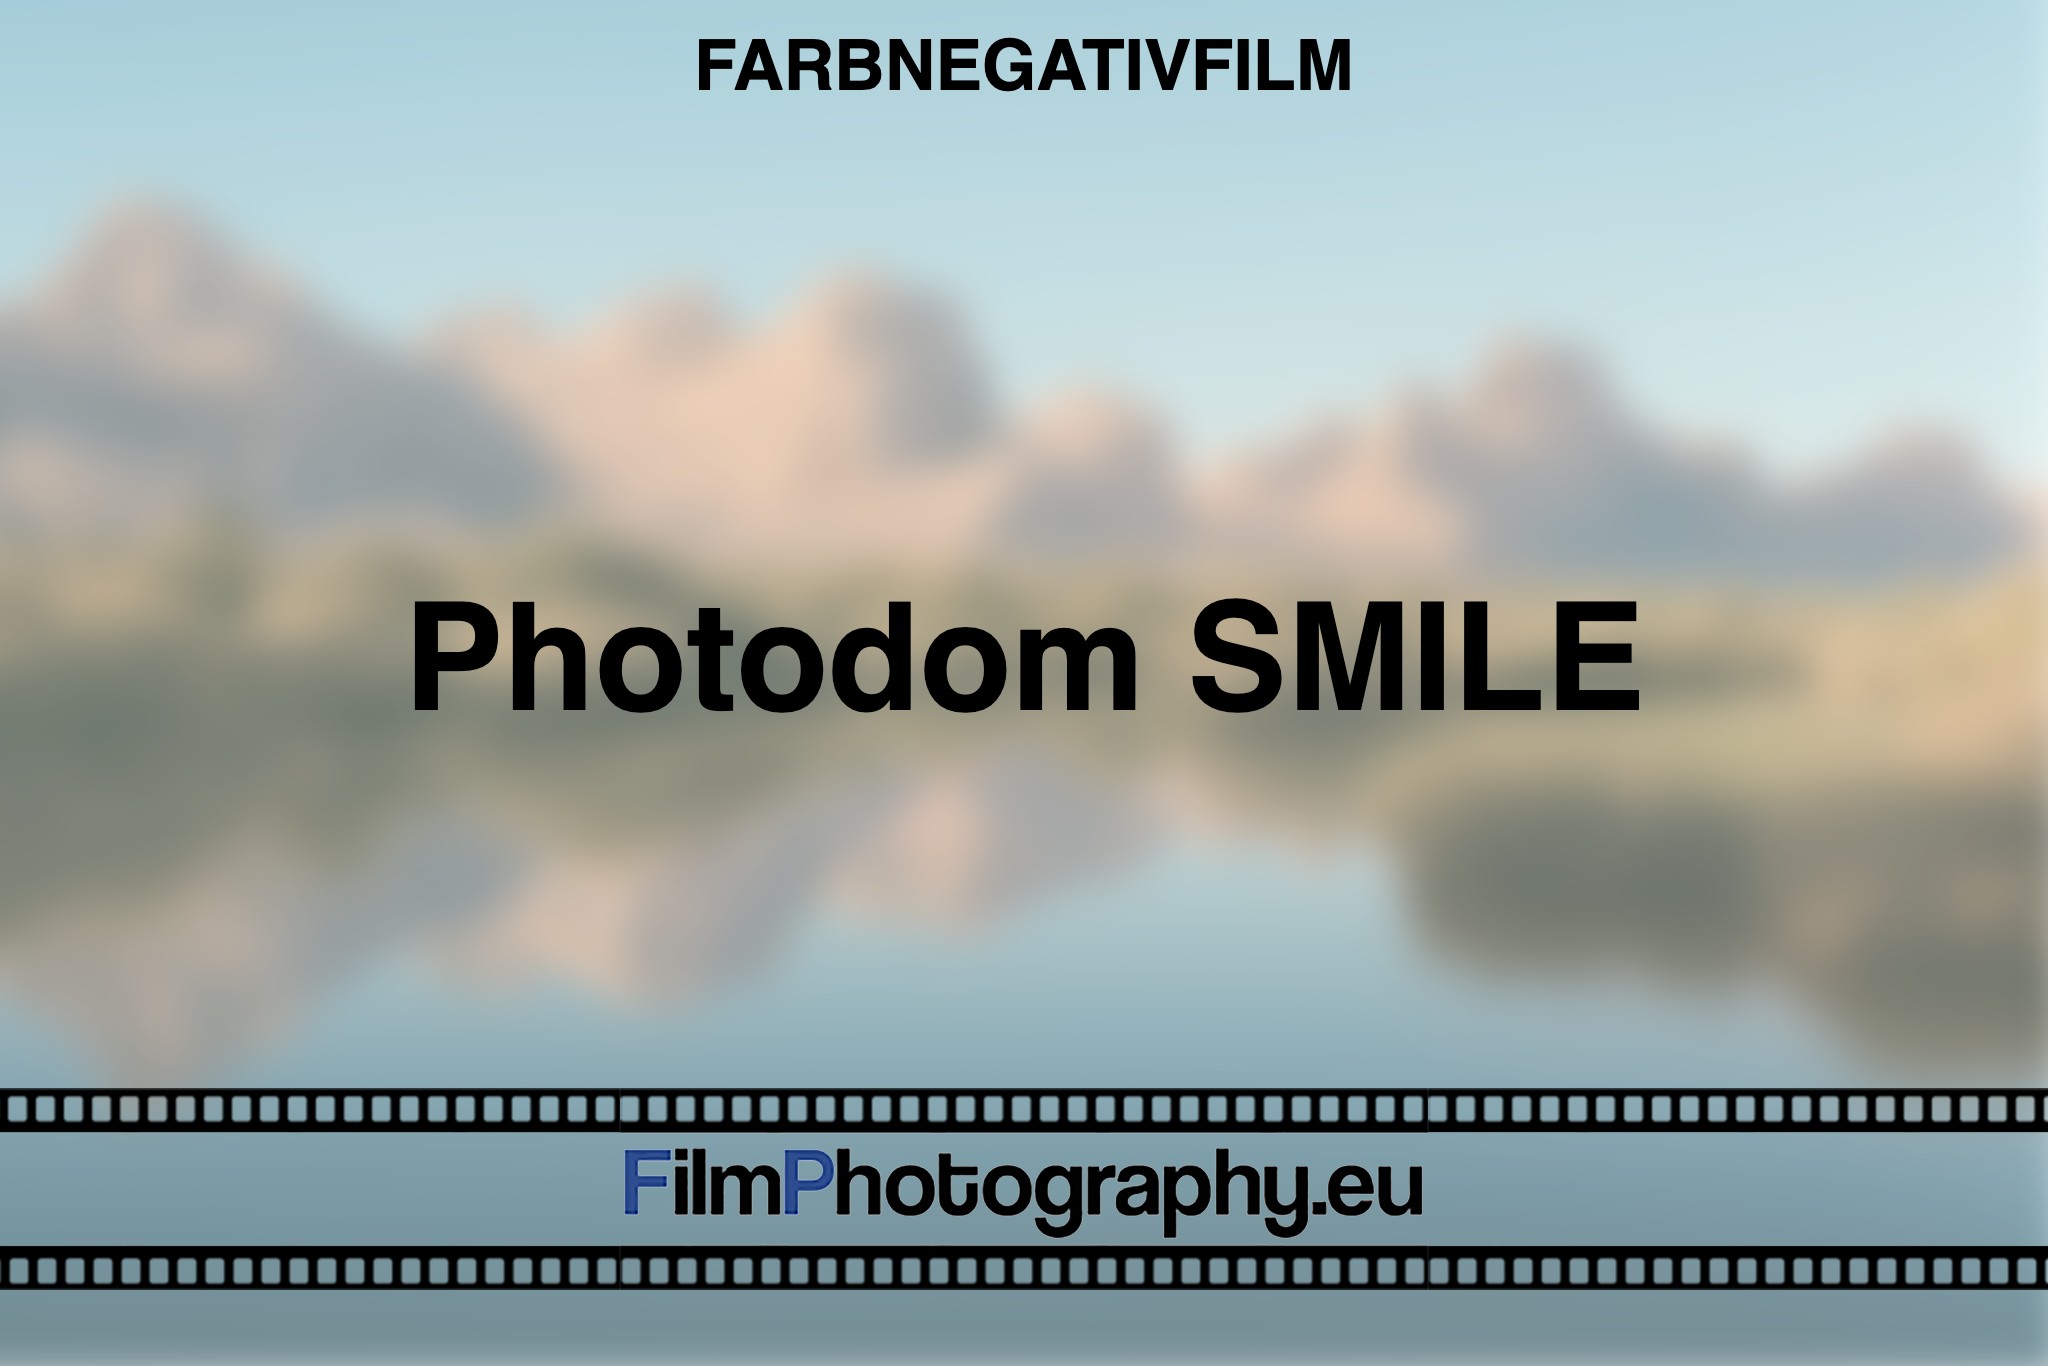 photodom-smile-farbnegativfilm-bnv